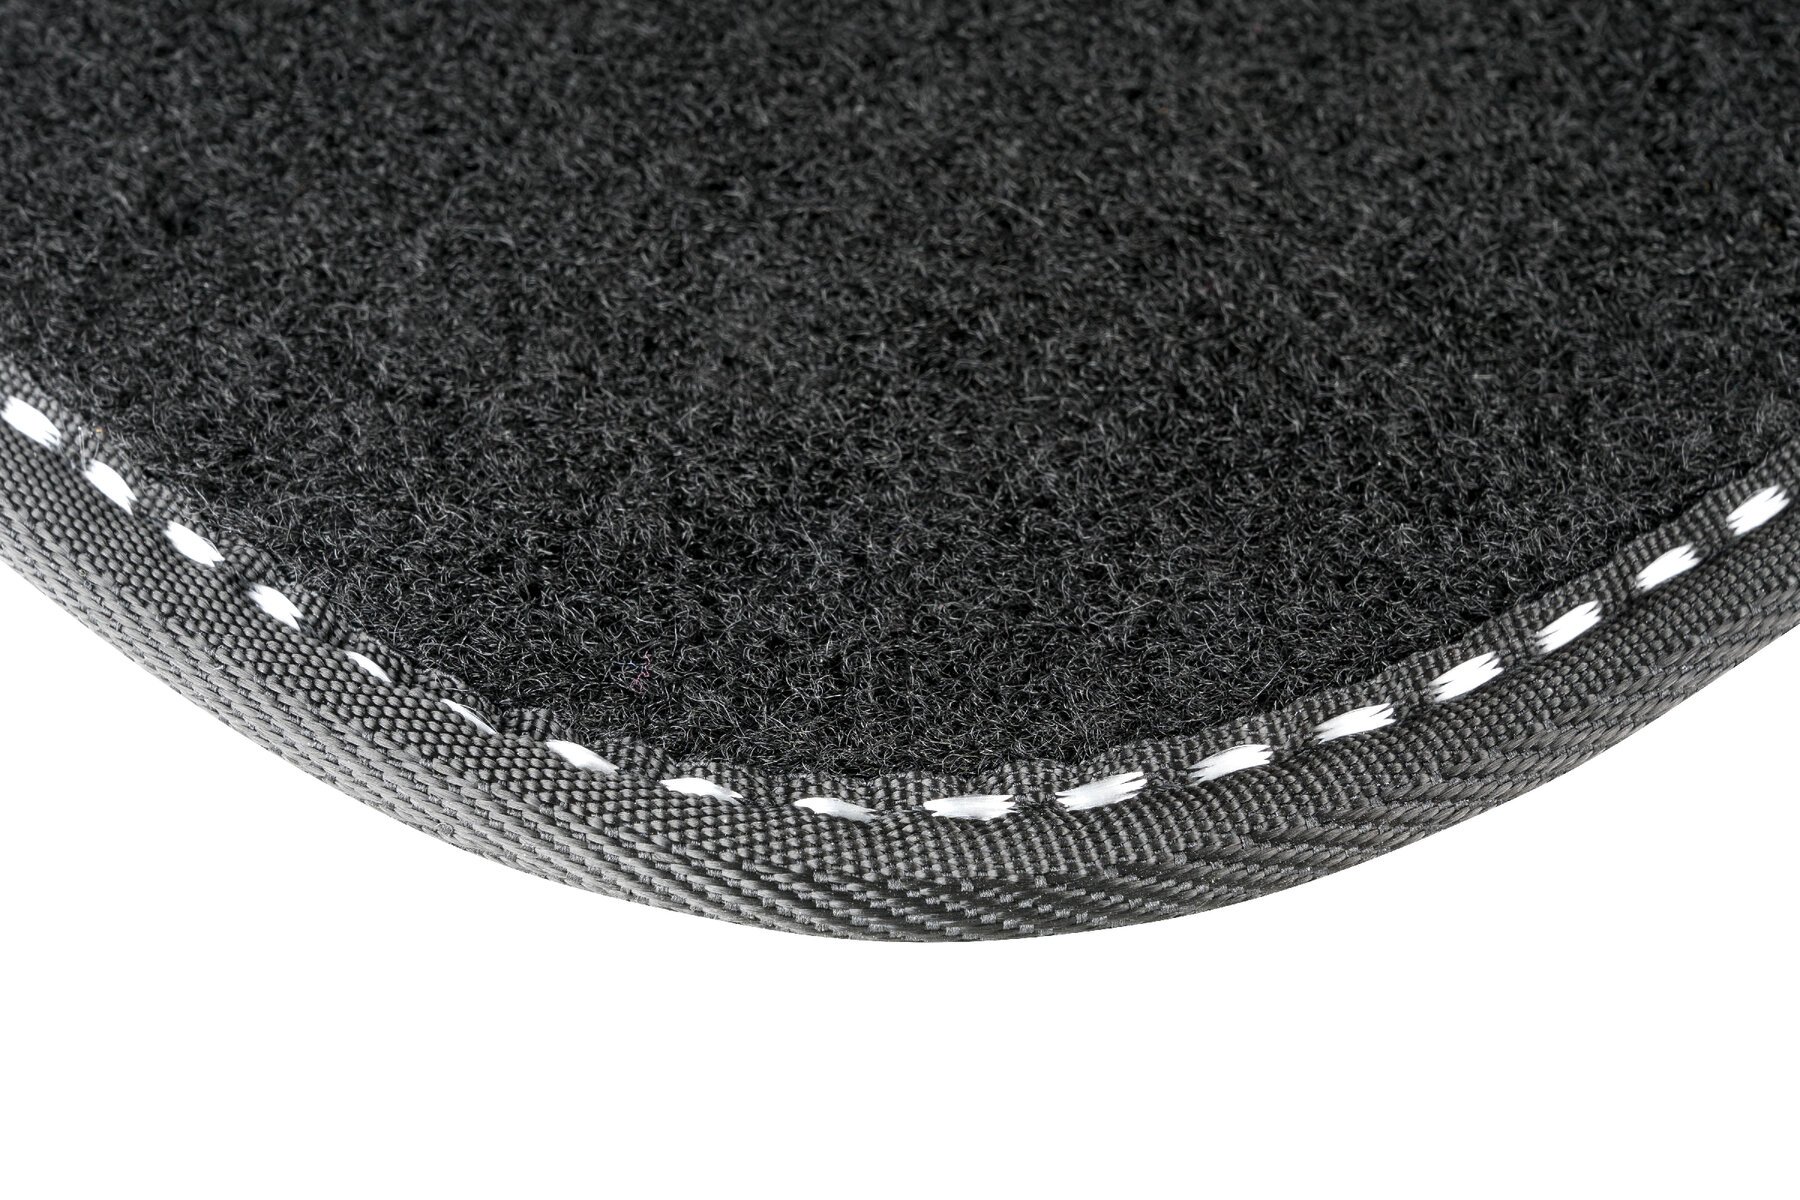 Auto-Teppich The Color, Universal Fußmatten-Set 4-teilig schwarz/weiß